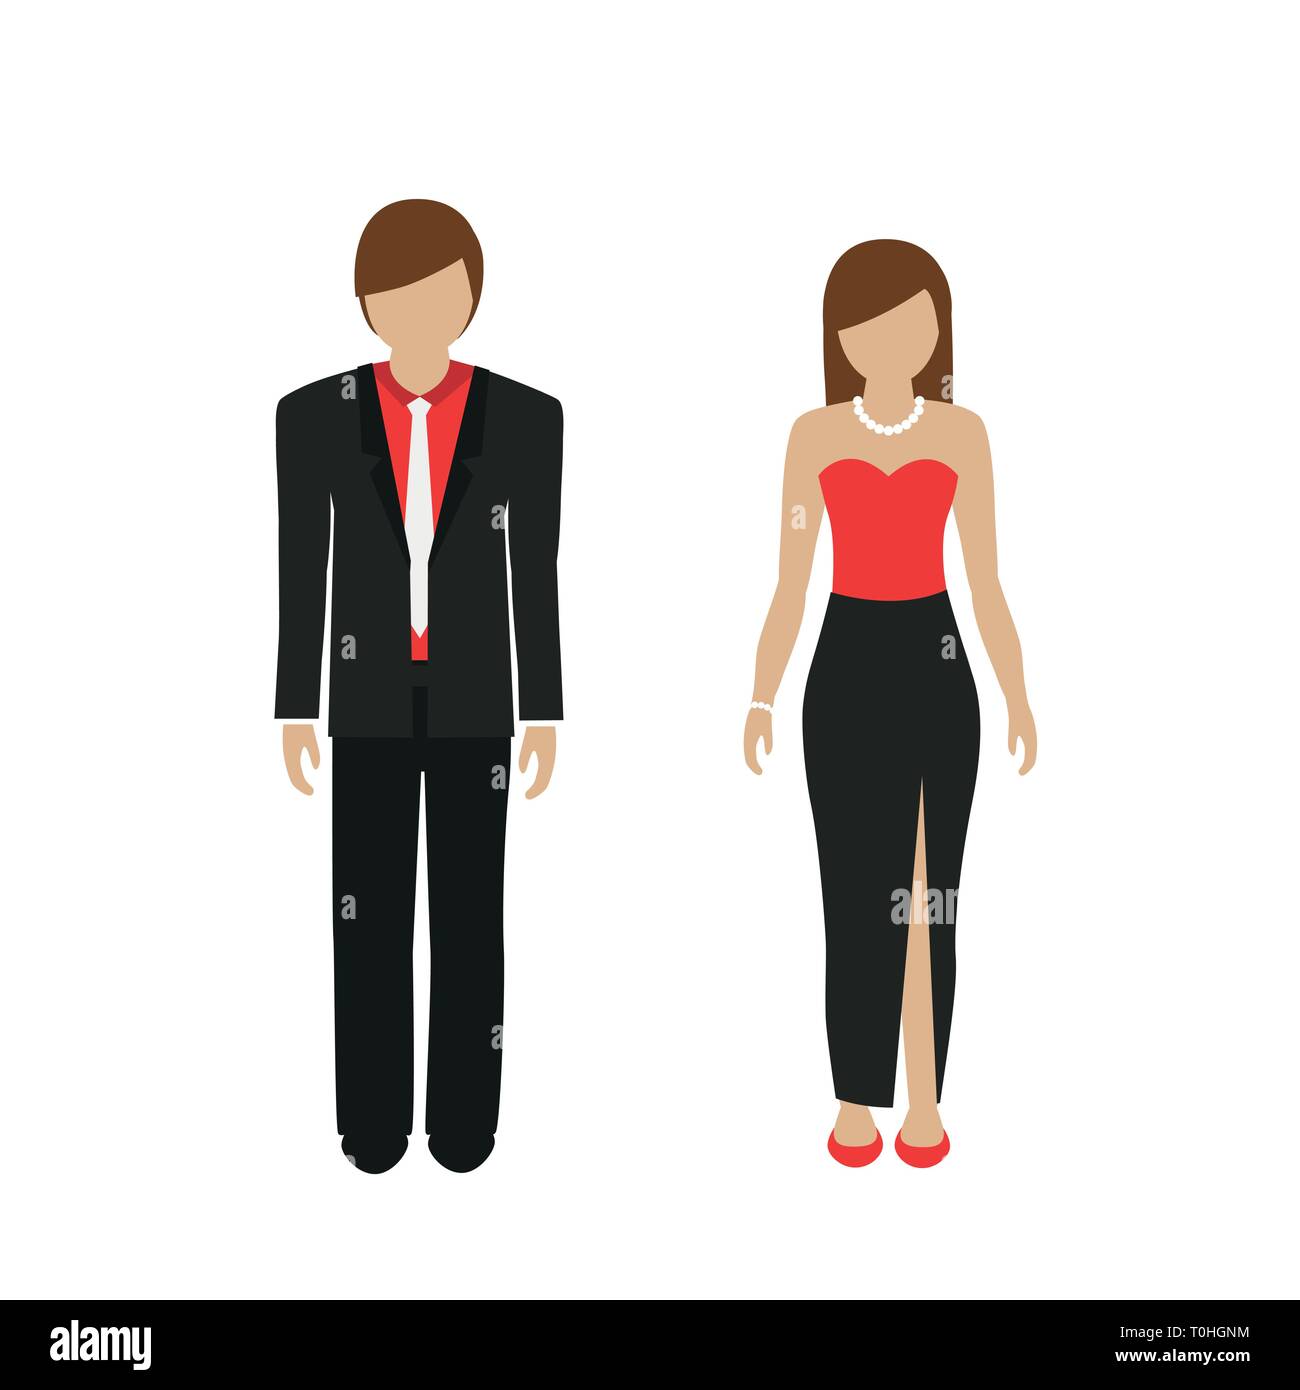 L'homme et la femme en tenue de soirée de caractère isolé sur fond blanc vector illustration EPS10 Illustration de Vecteur